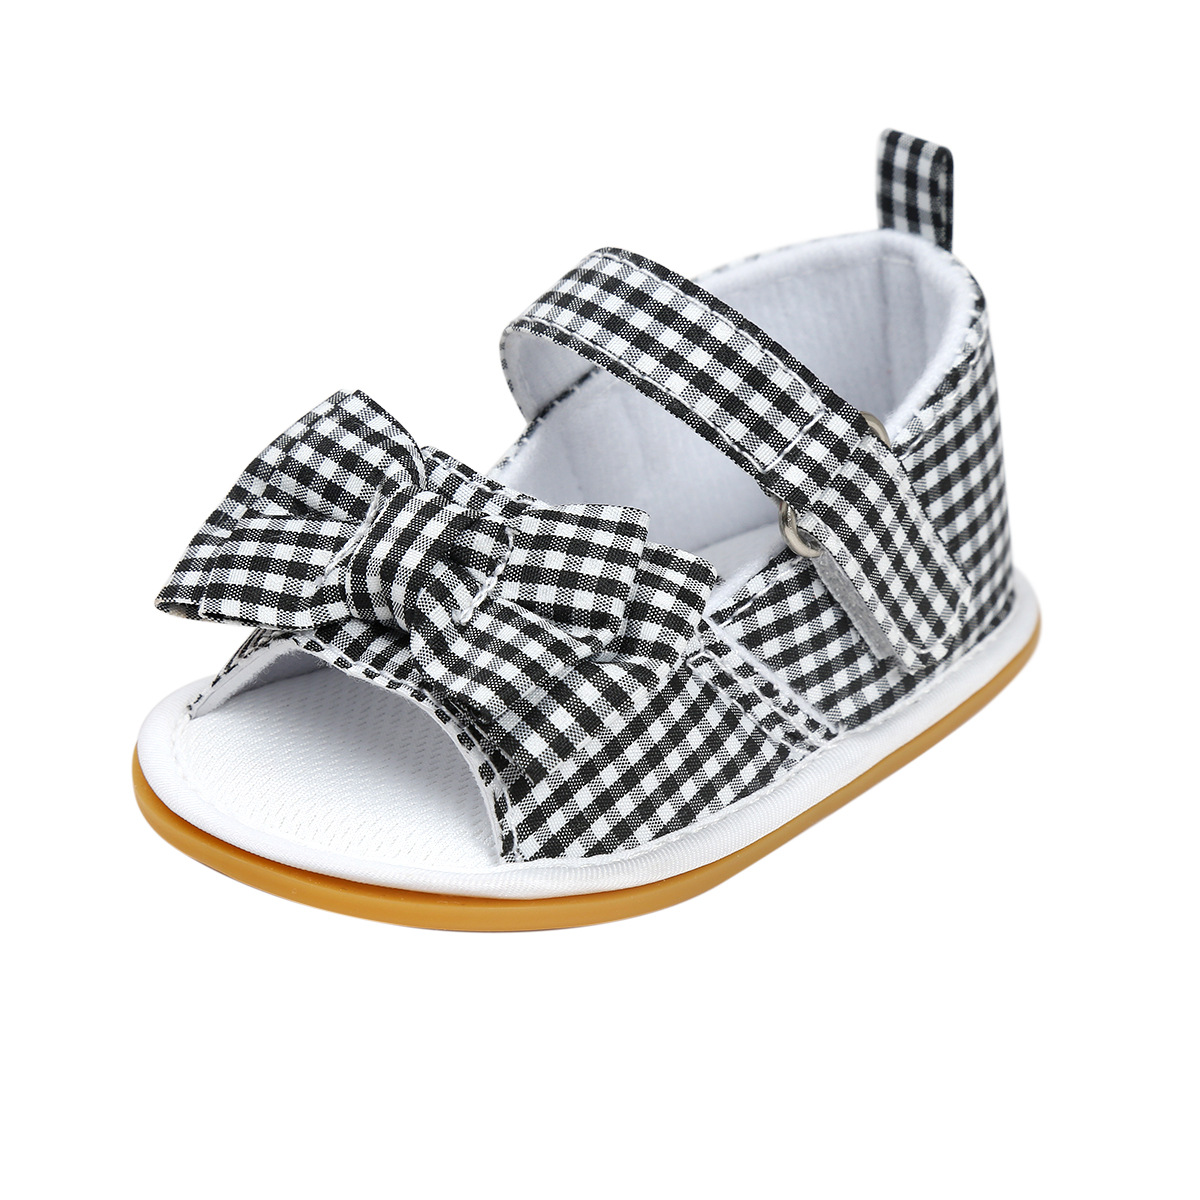 Chaussures bébé en coton - Ref 3436770 Image 55